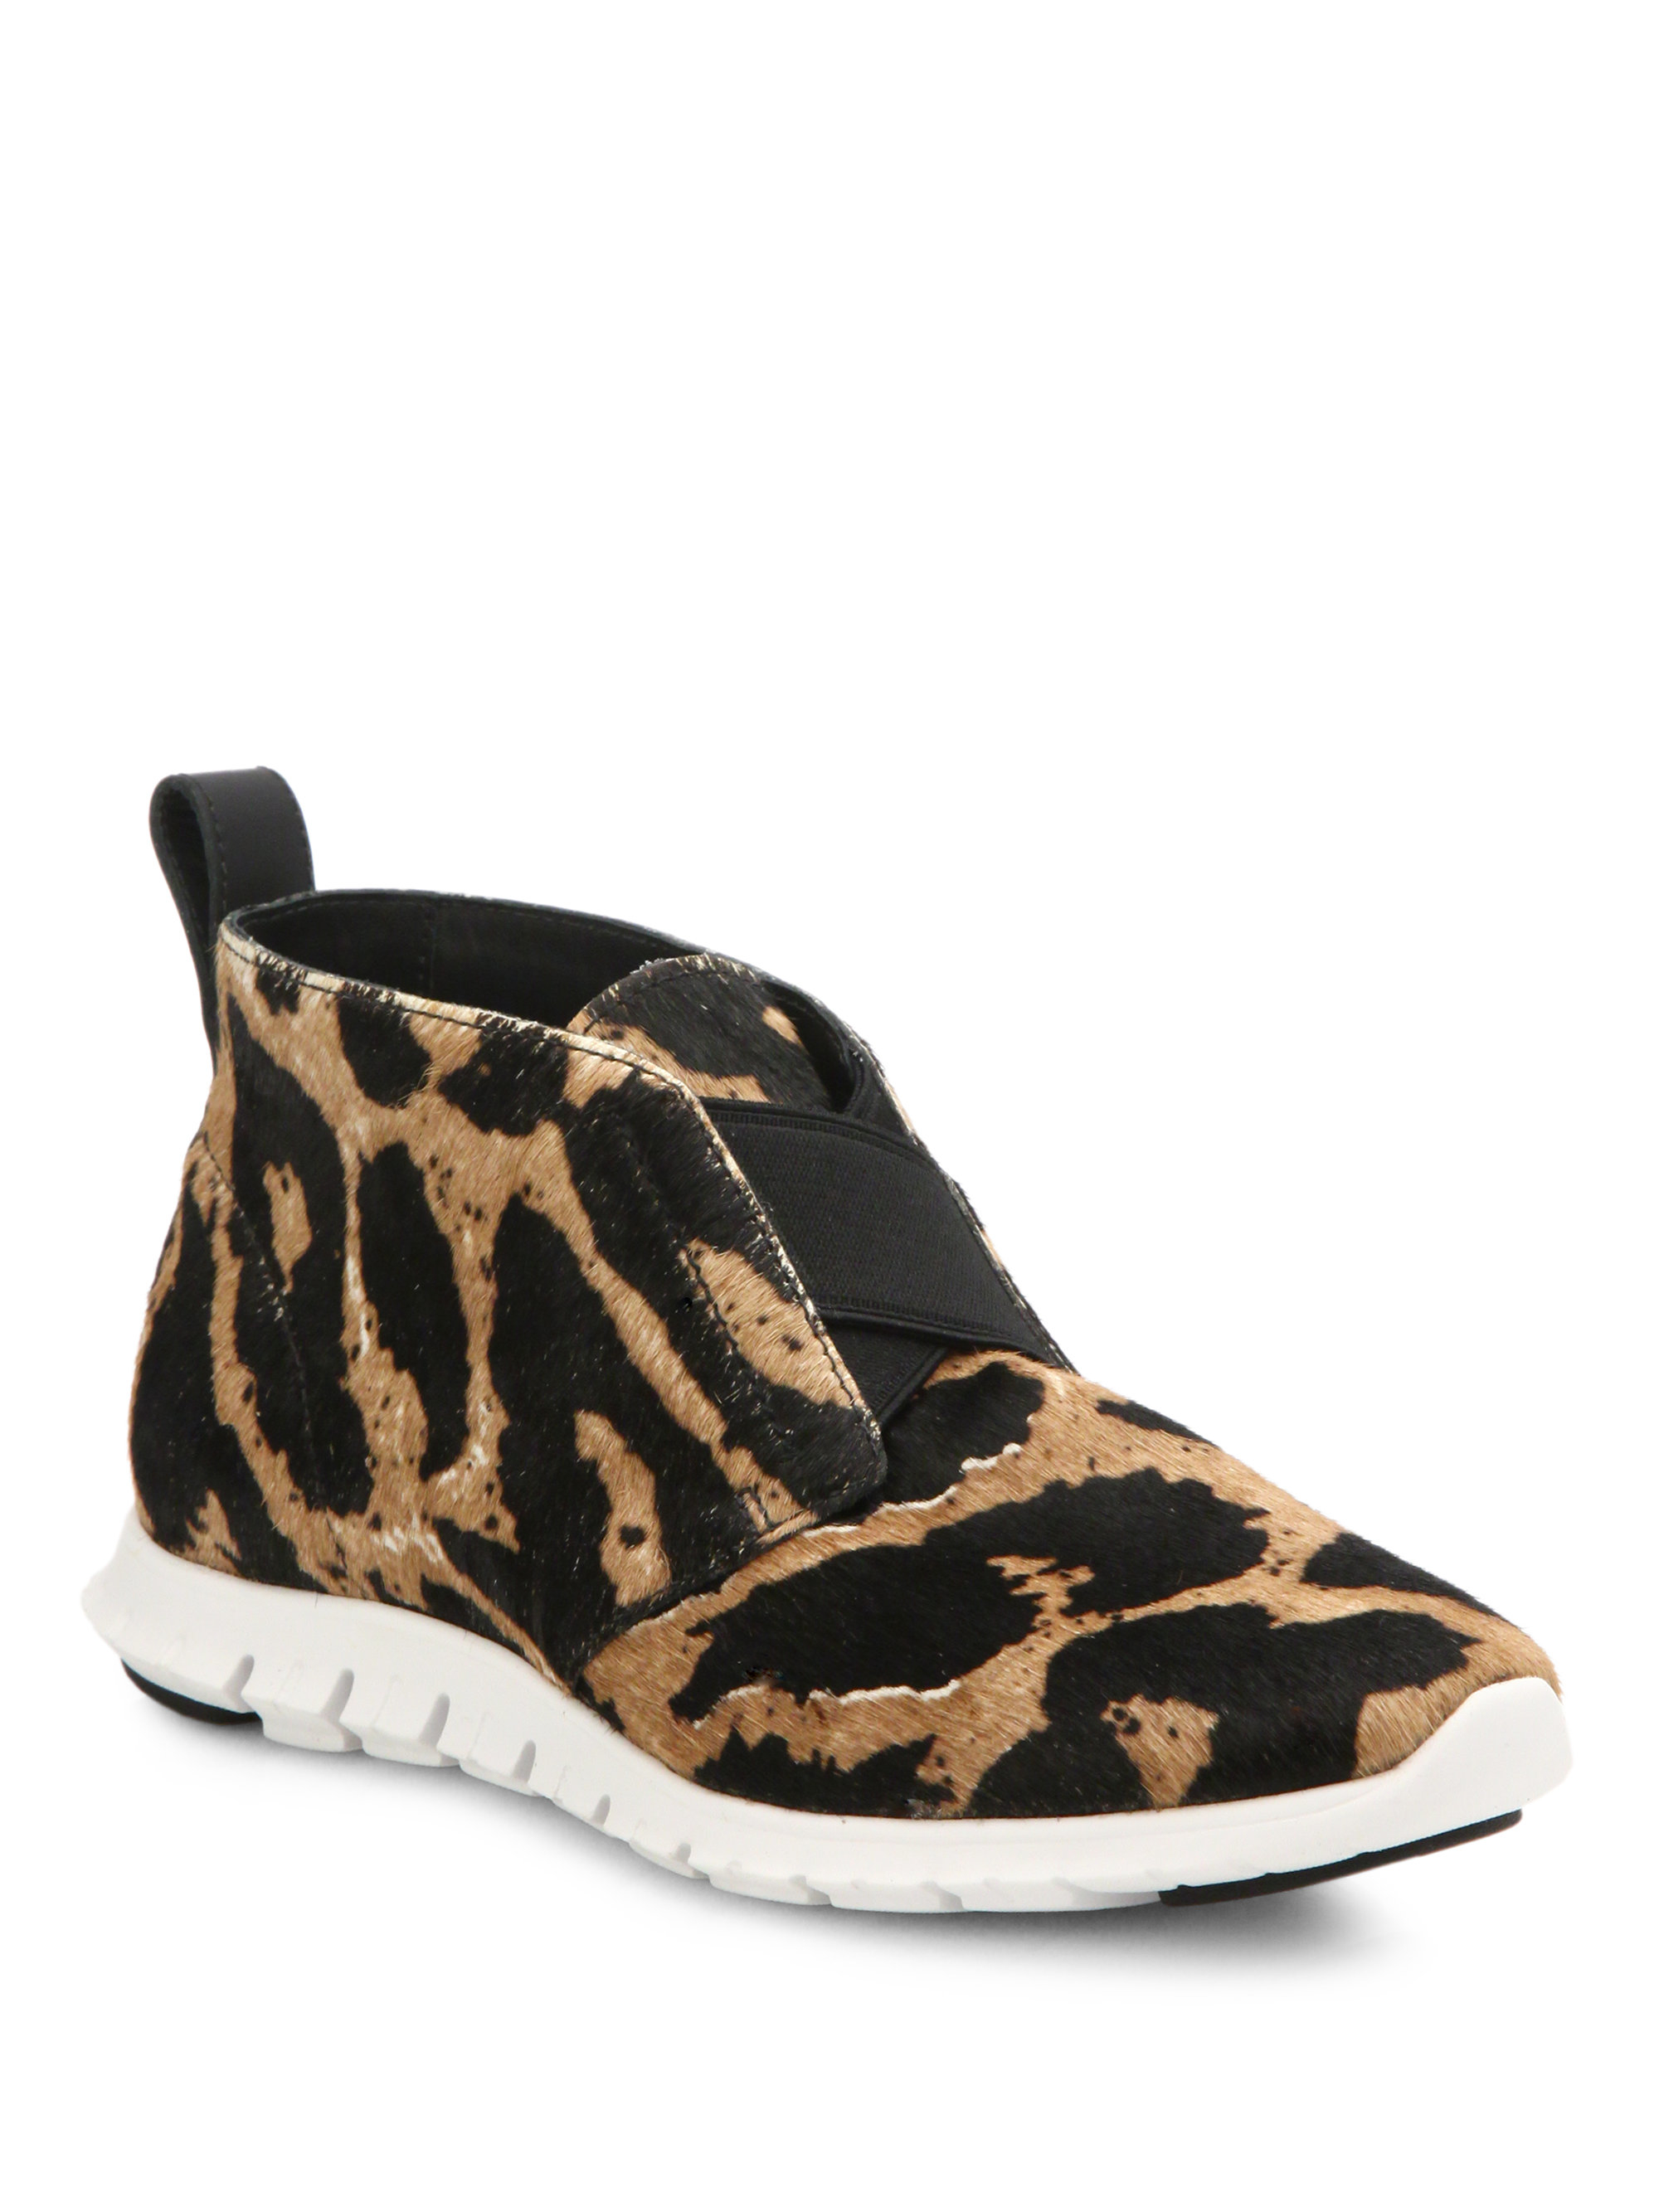 cole haan leopard sneakers